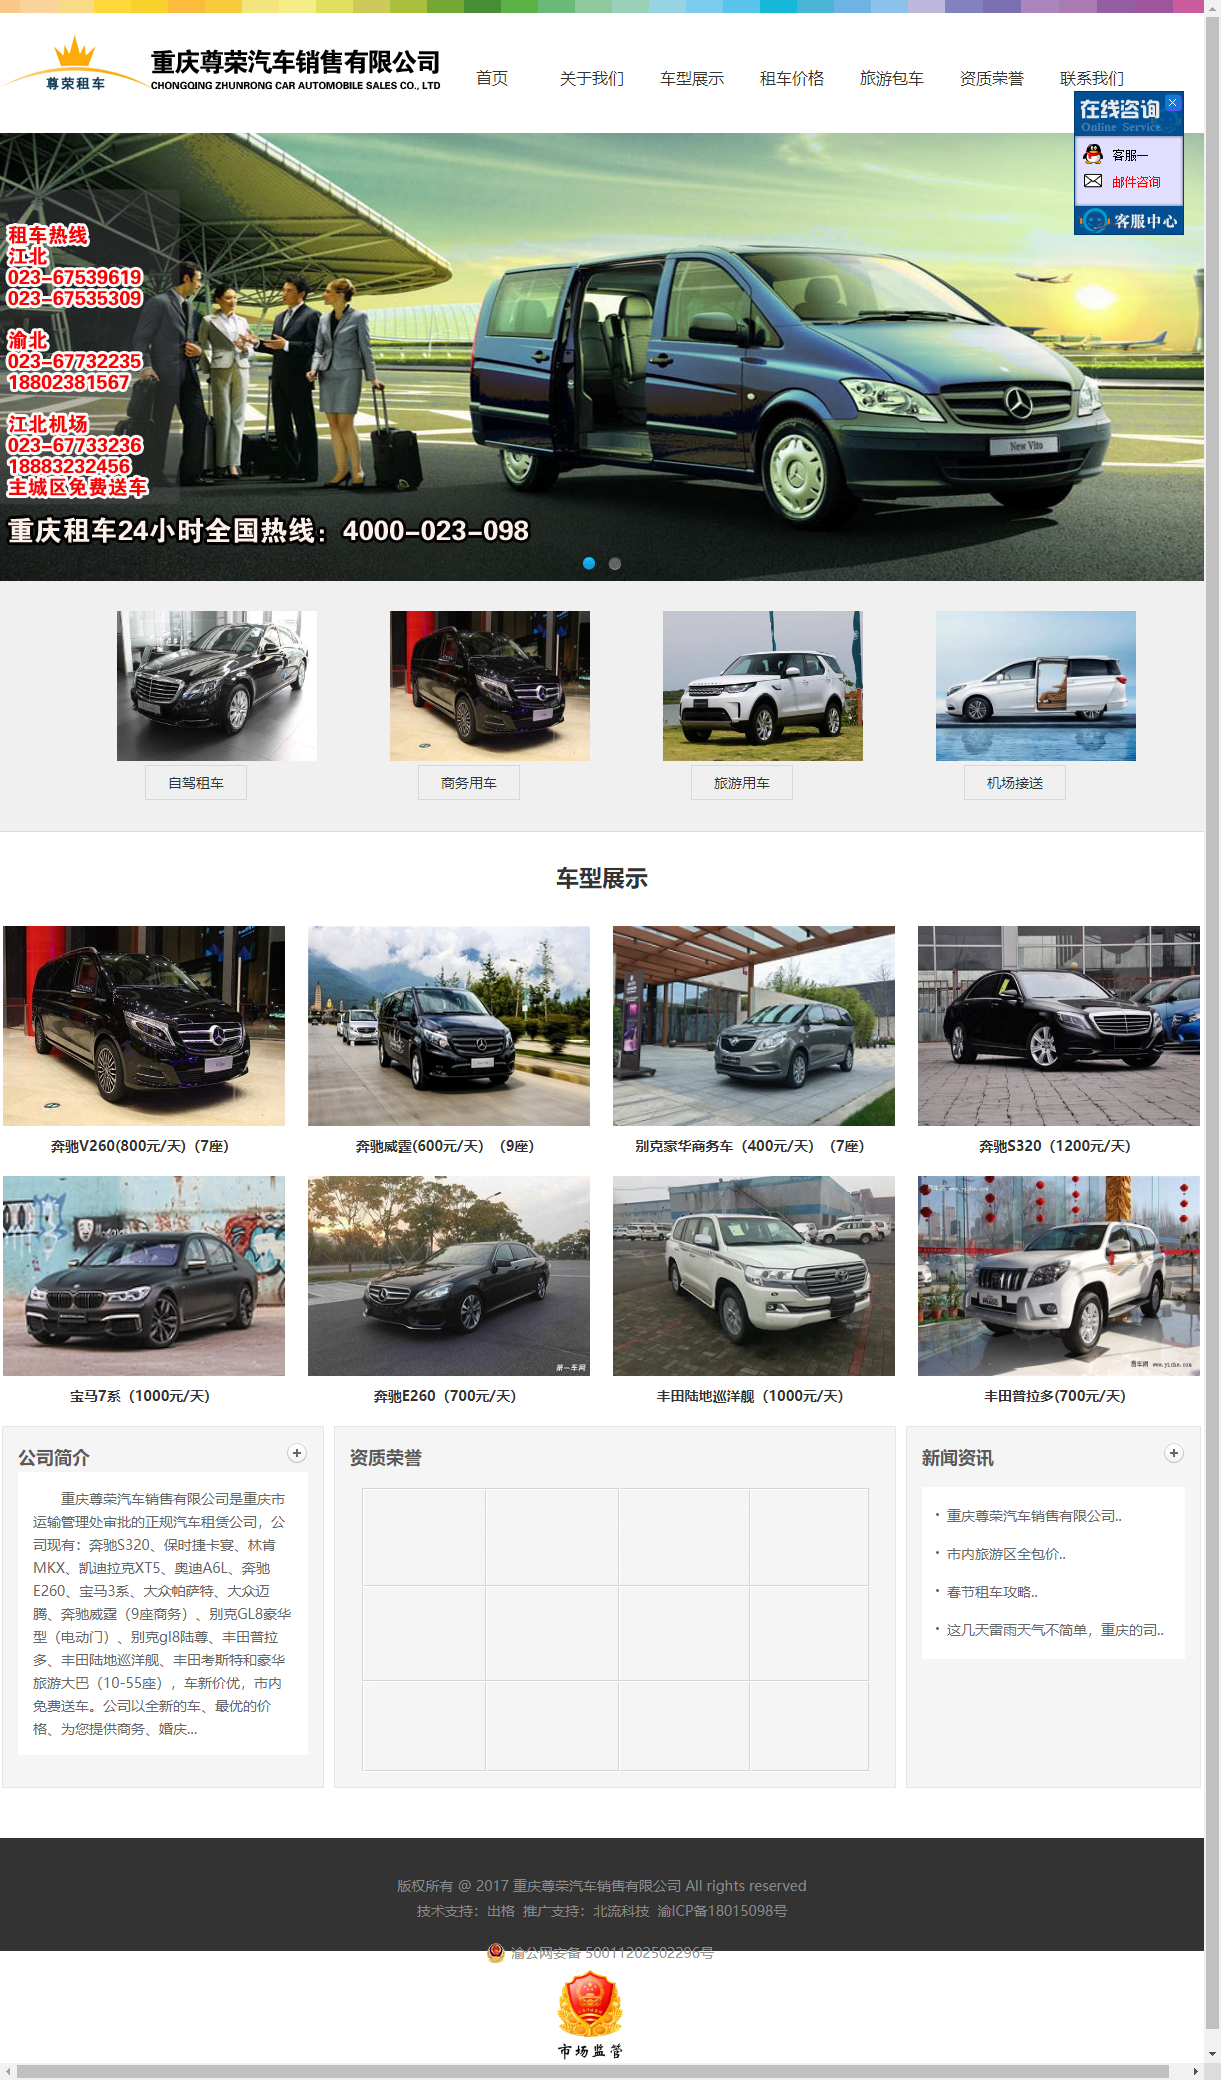 重庆尊荣汽车销售有限公司网站案例